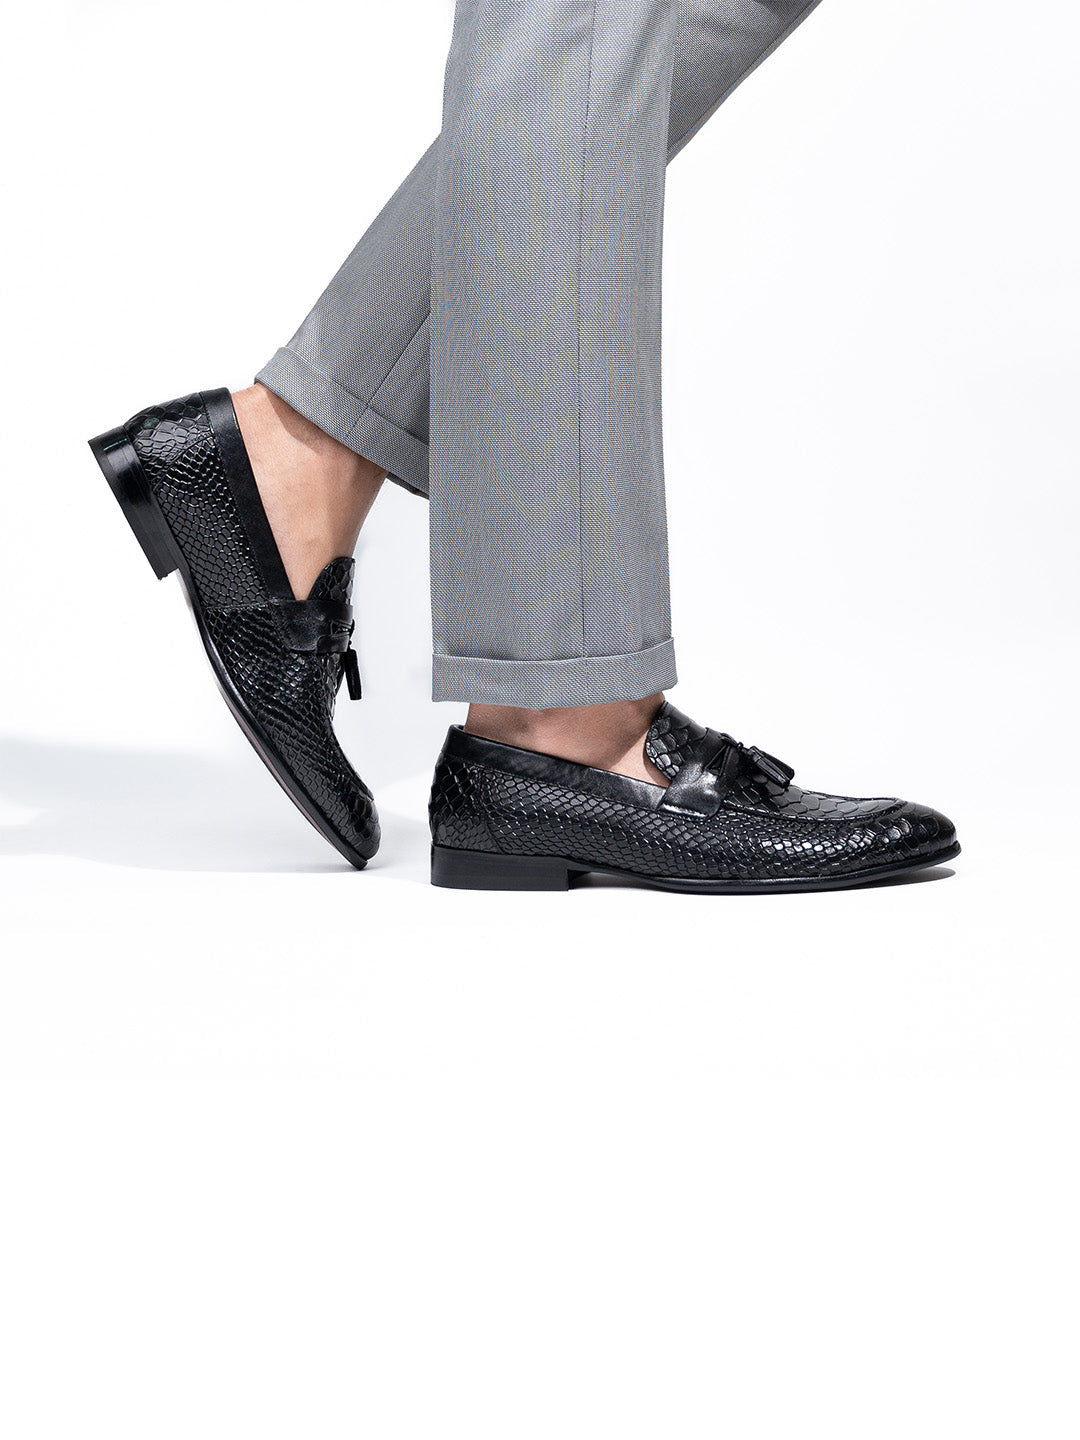 Classic Black Leather Men's Tassel Slip-On Shoes